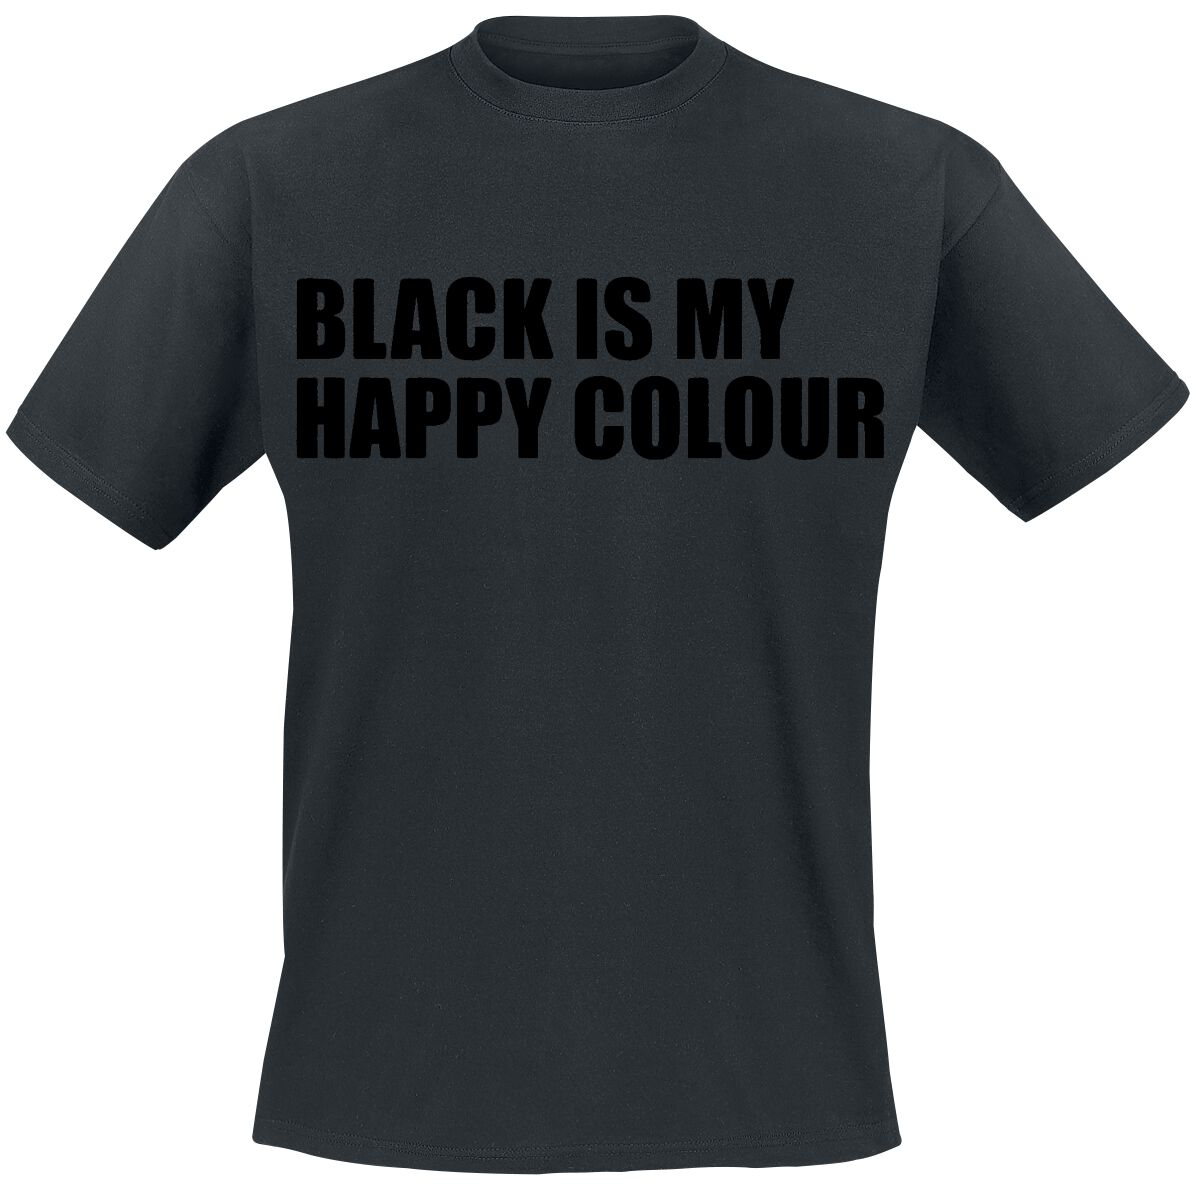 Sprüche T-Shirt - Black Is My Happy Colour - M bis 5XL - für Männer - Größe M - schwarz